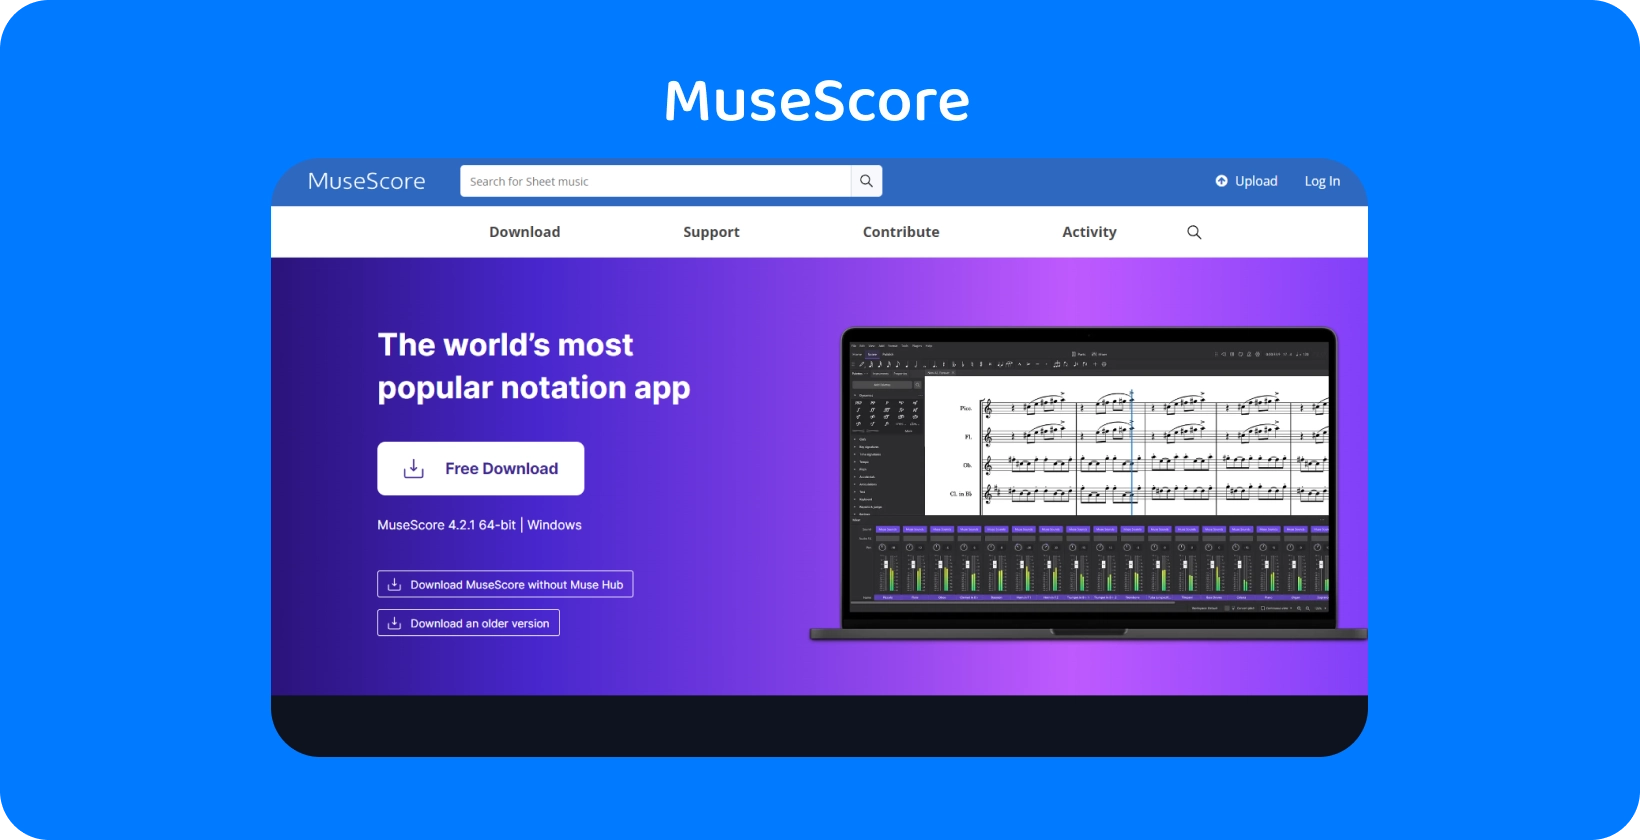 ซอฟต์แวร์สัญกรณ์ MuseScore แสดงบนหน้าจอแล็ปท็อป ซึ่งแสดงคุณสมบัติการถอดเสียง